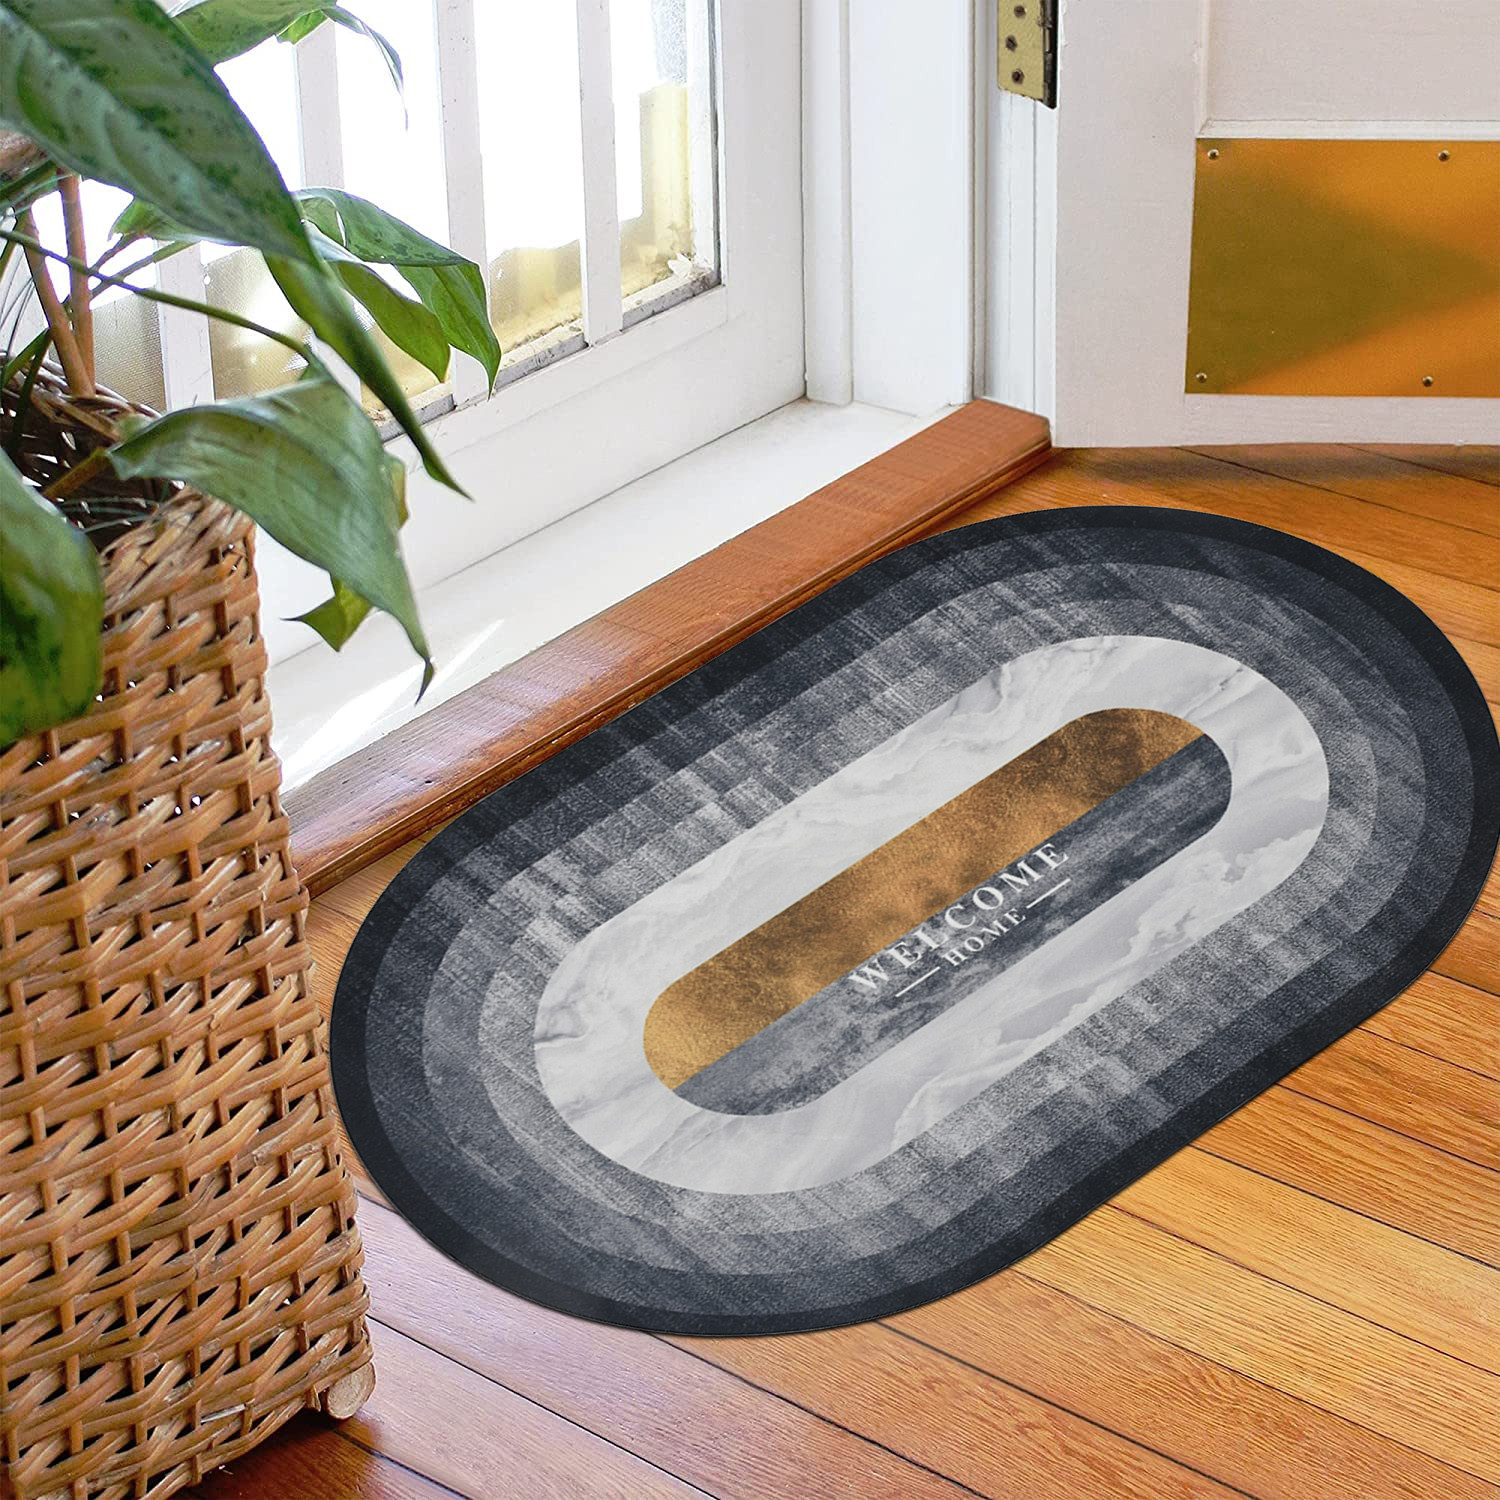 Kuber Industries Doormat|Doormat for Door Entrance|Doormats for Rooms|Doormat for Home|Memory Foam welcome Home Doormat (Grey)